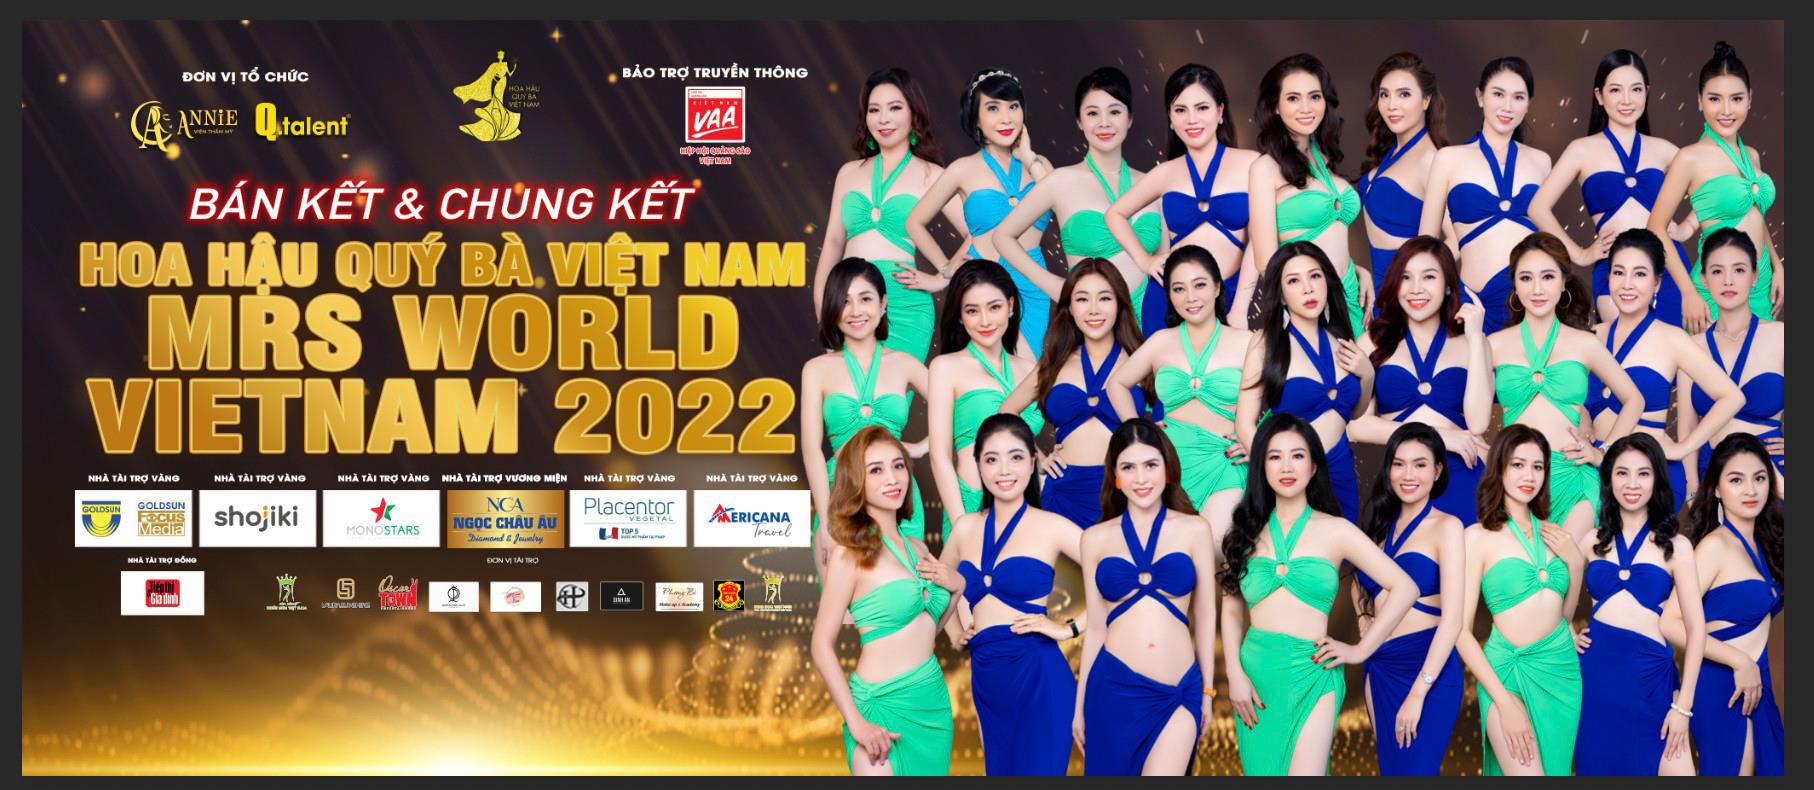 Hé lộ dàn sao “khủng” hội tụ trong đêm chung kết Hoa hậu Quý bà Việt Nam 2022 - Ảnh 7.